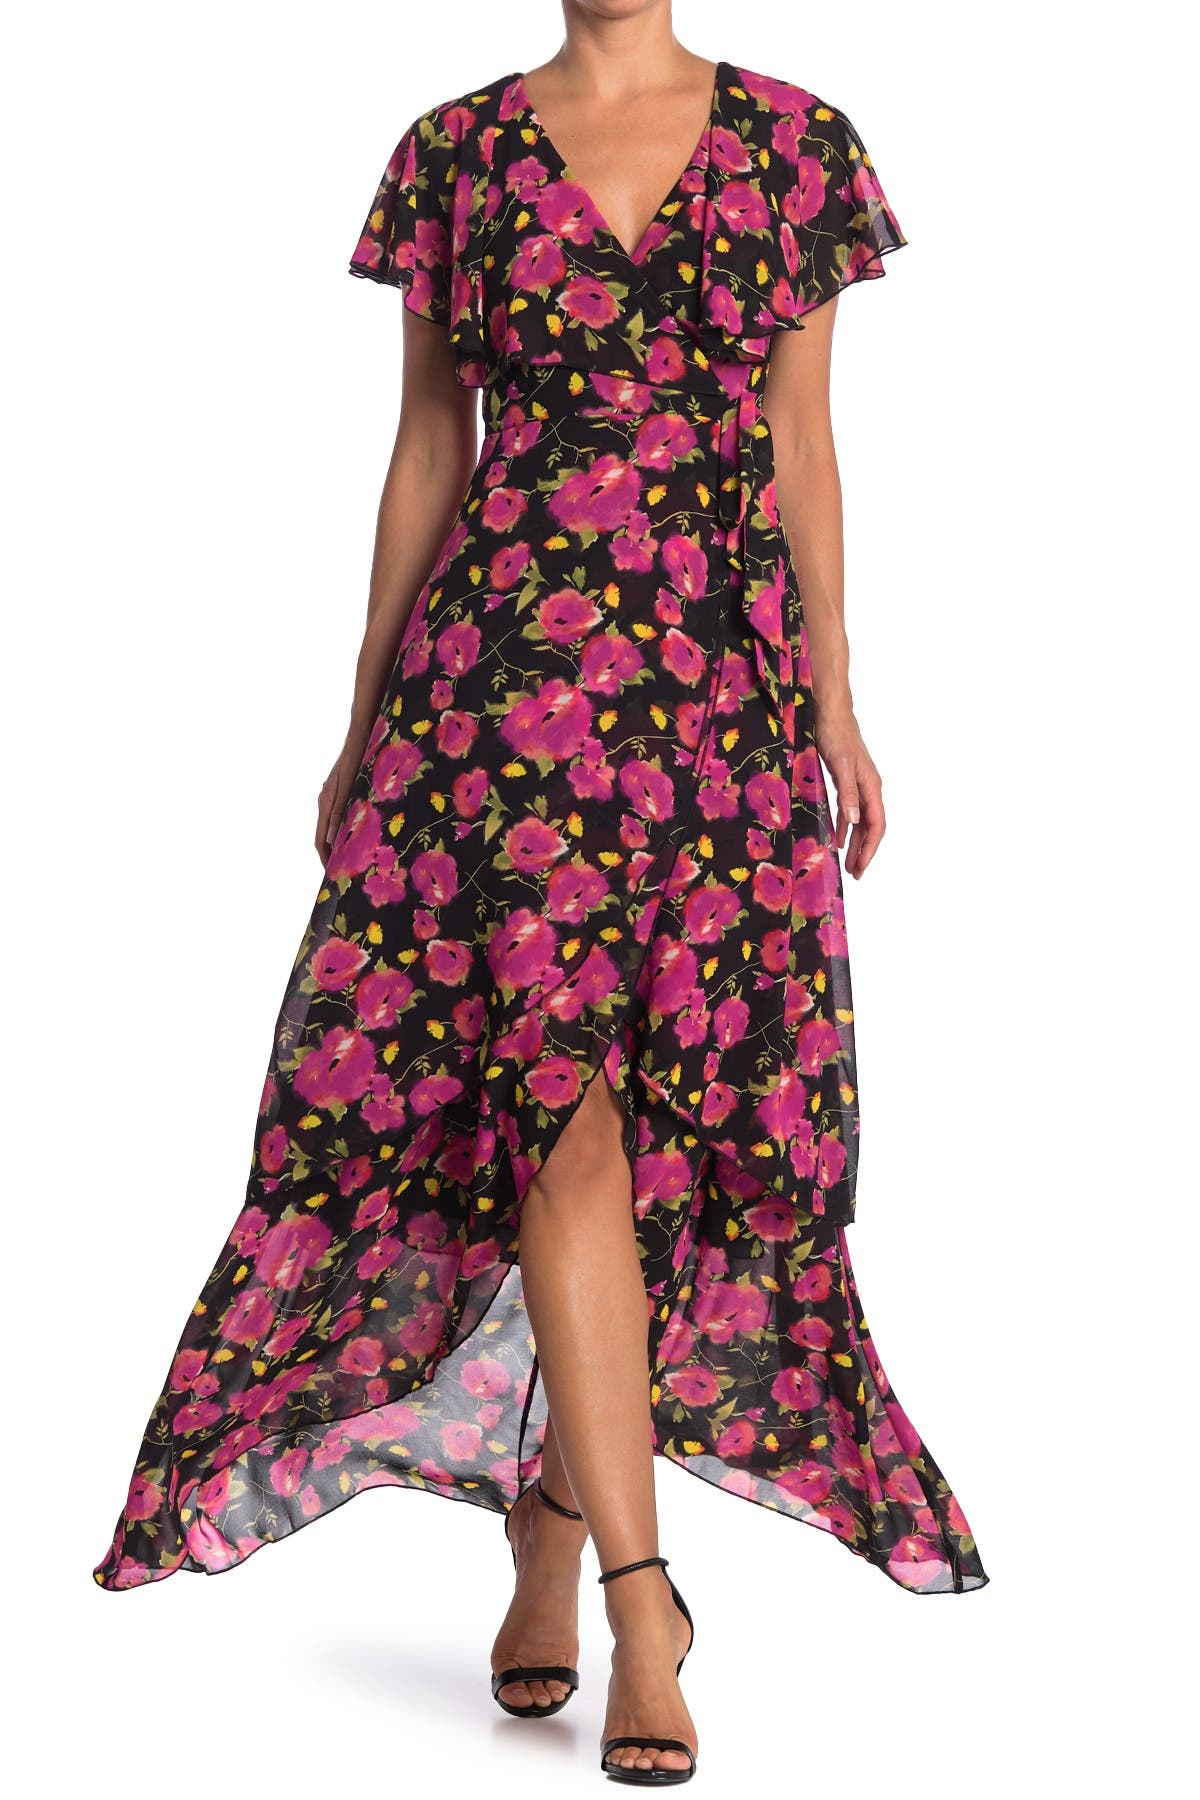 nordstrom rack floral dress